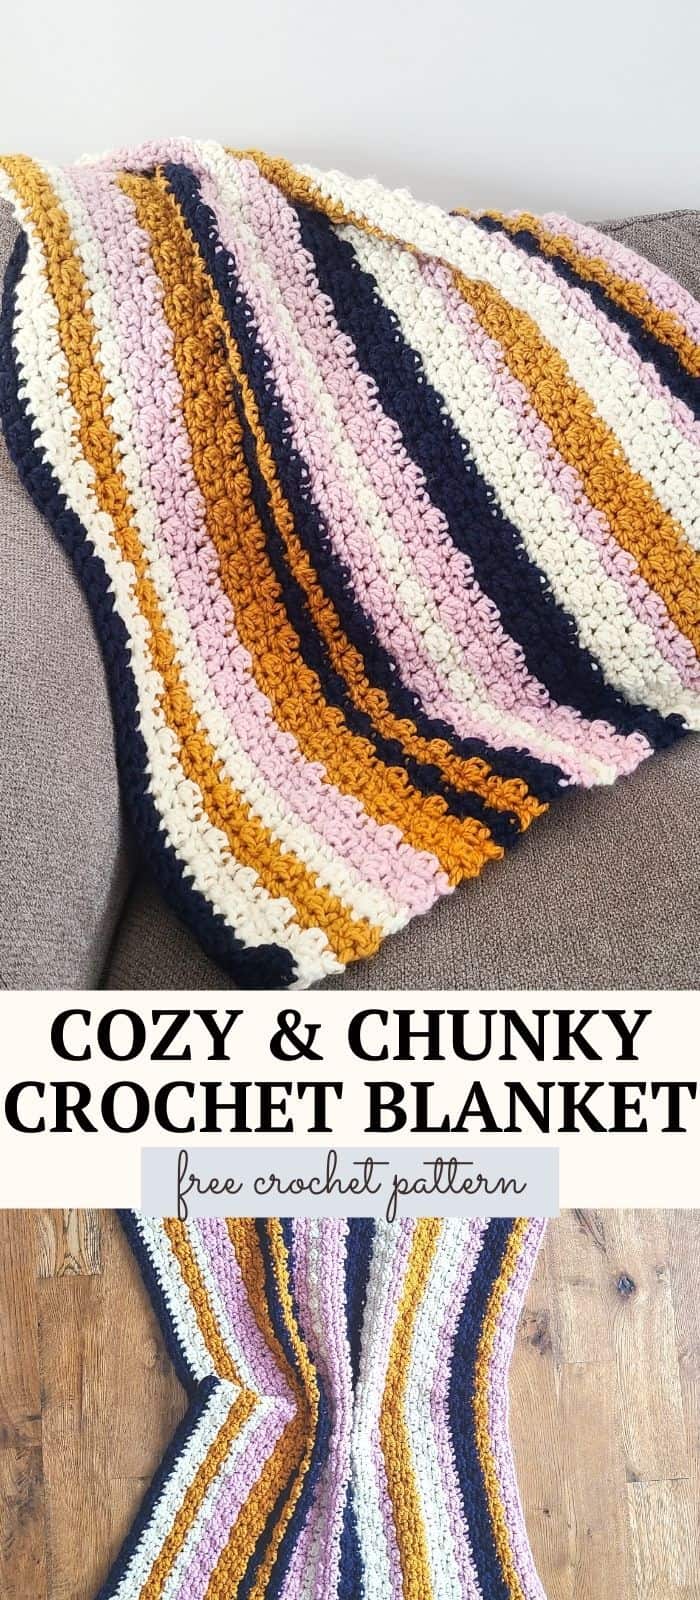 Emily Chunky Crochet Blanket Pattern via @easycrochetcom